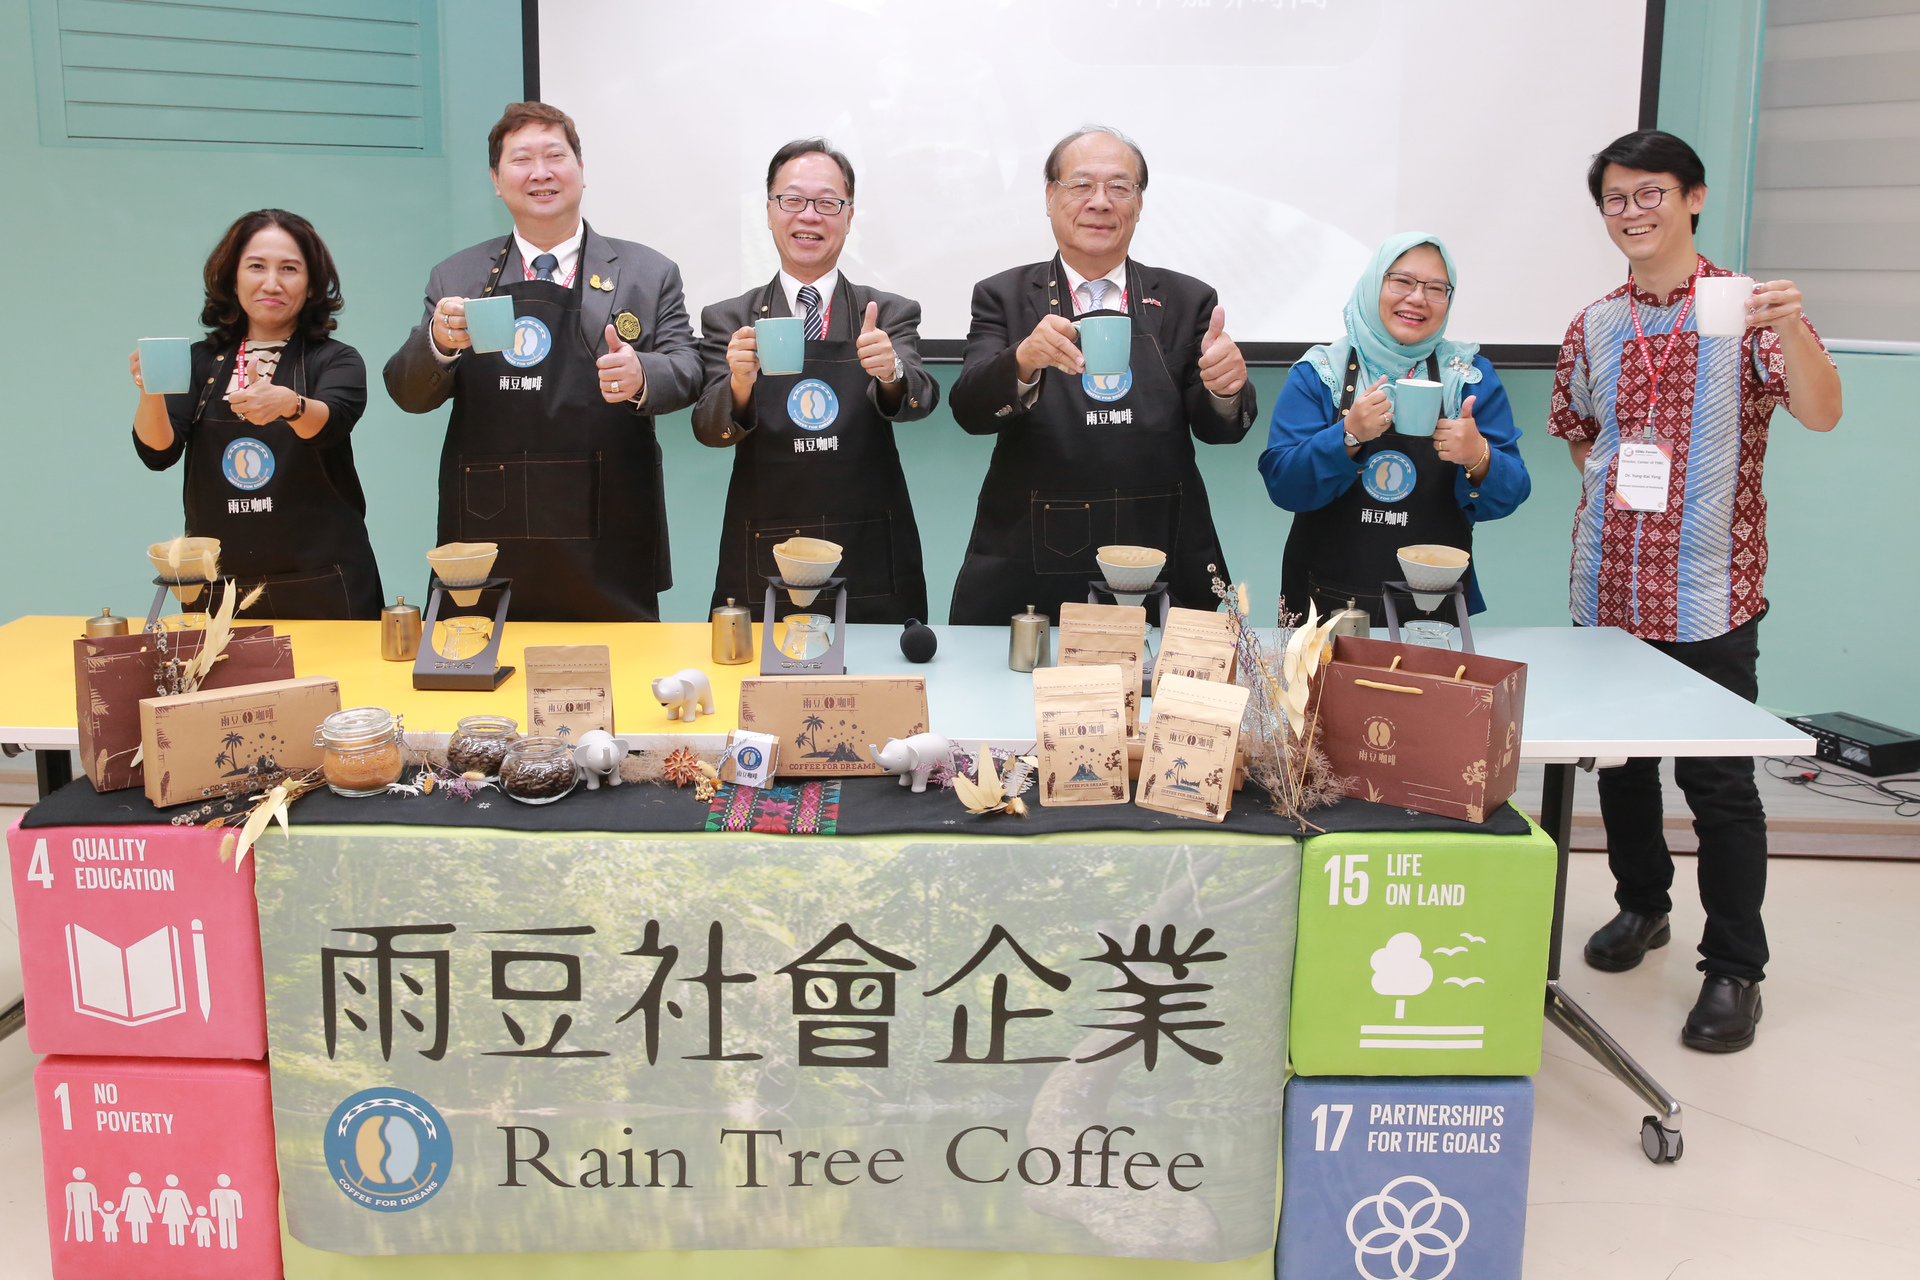 高雄大學成立社會企業，即將開賣「雨豆咖啡」